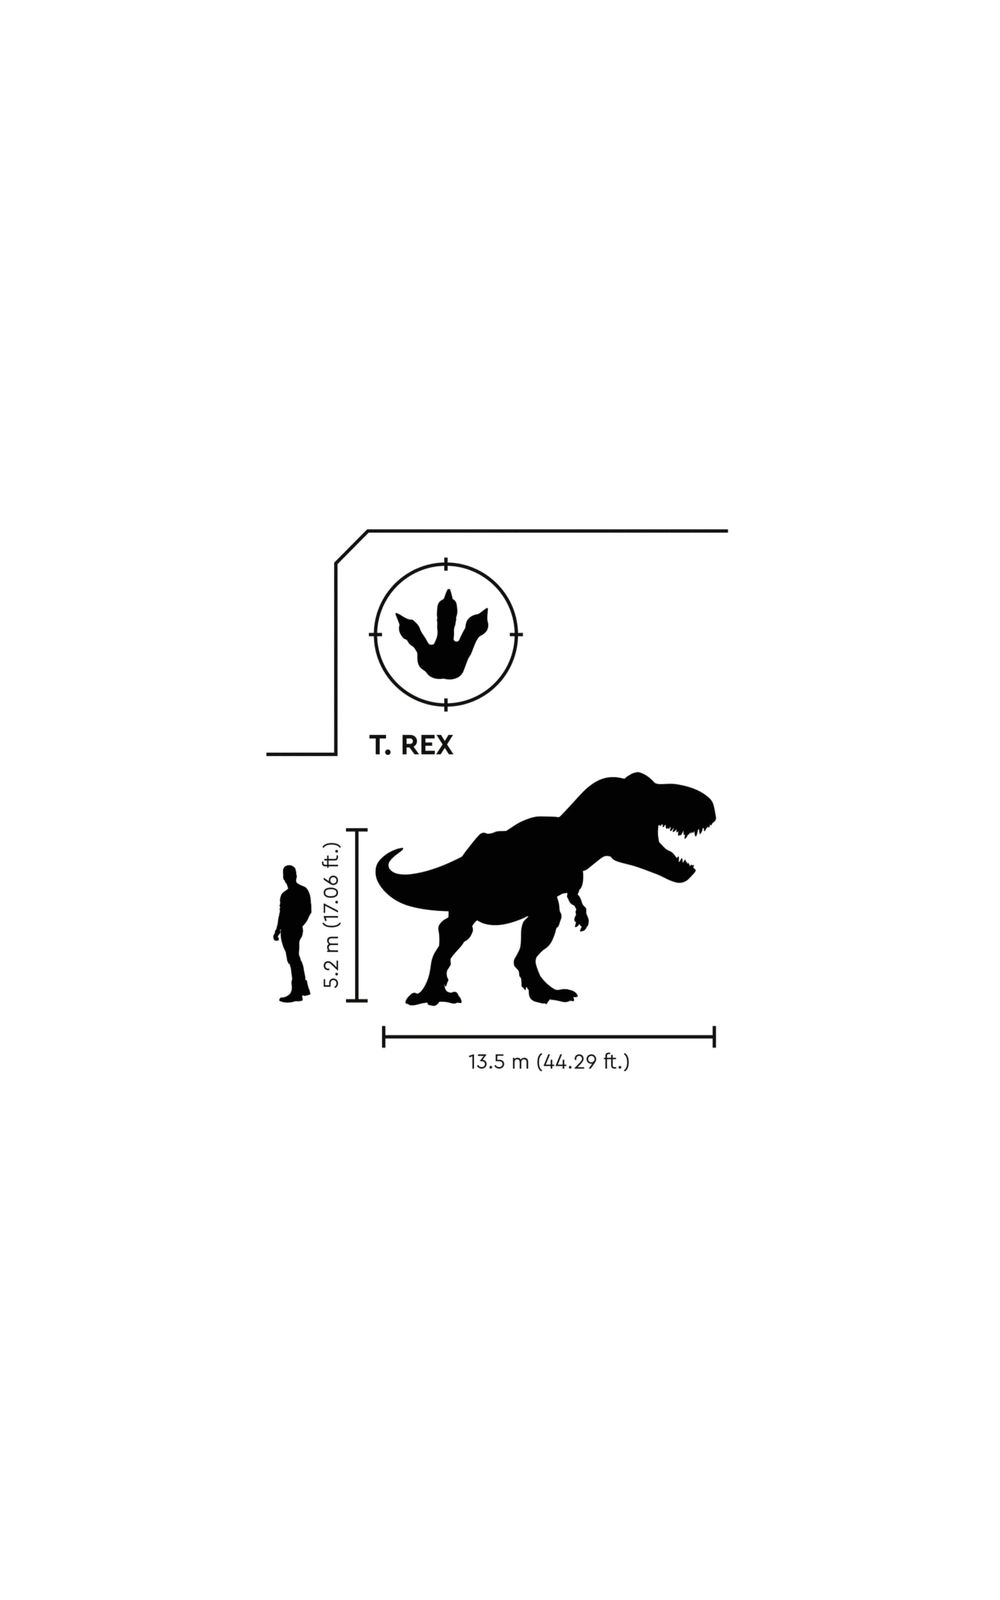 LEGO Jurassic World - Fuga dos Dinossauros Atrociraptor e T. Rex